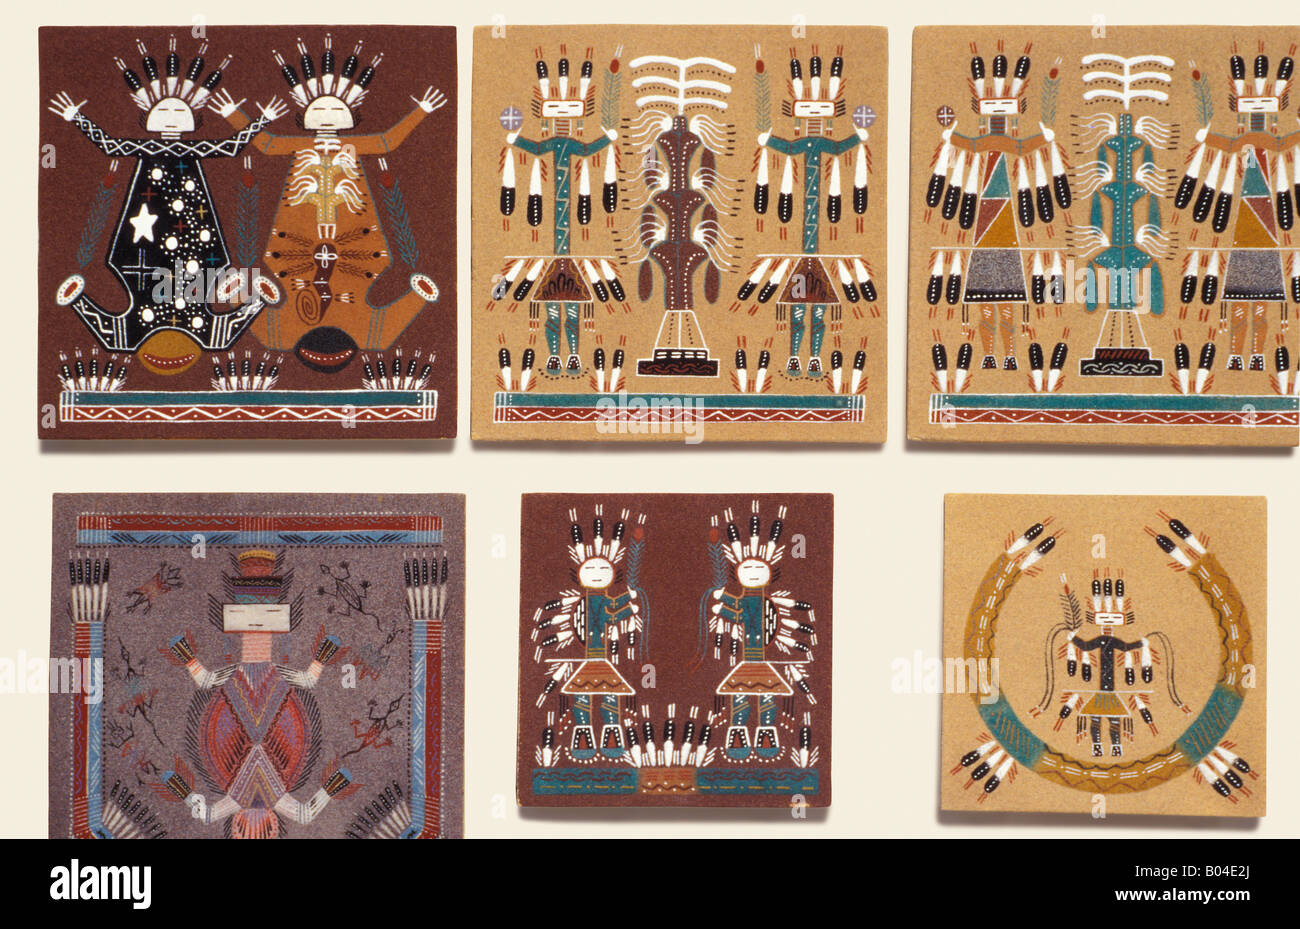 Peintures de sable navajo sur les carreaux affiché à la vente à la cérémonie indienne intertribal à Gallup NM. Photographie Banque D'Images